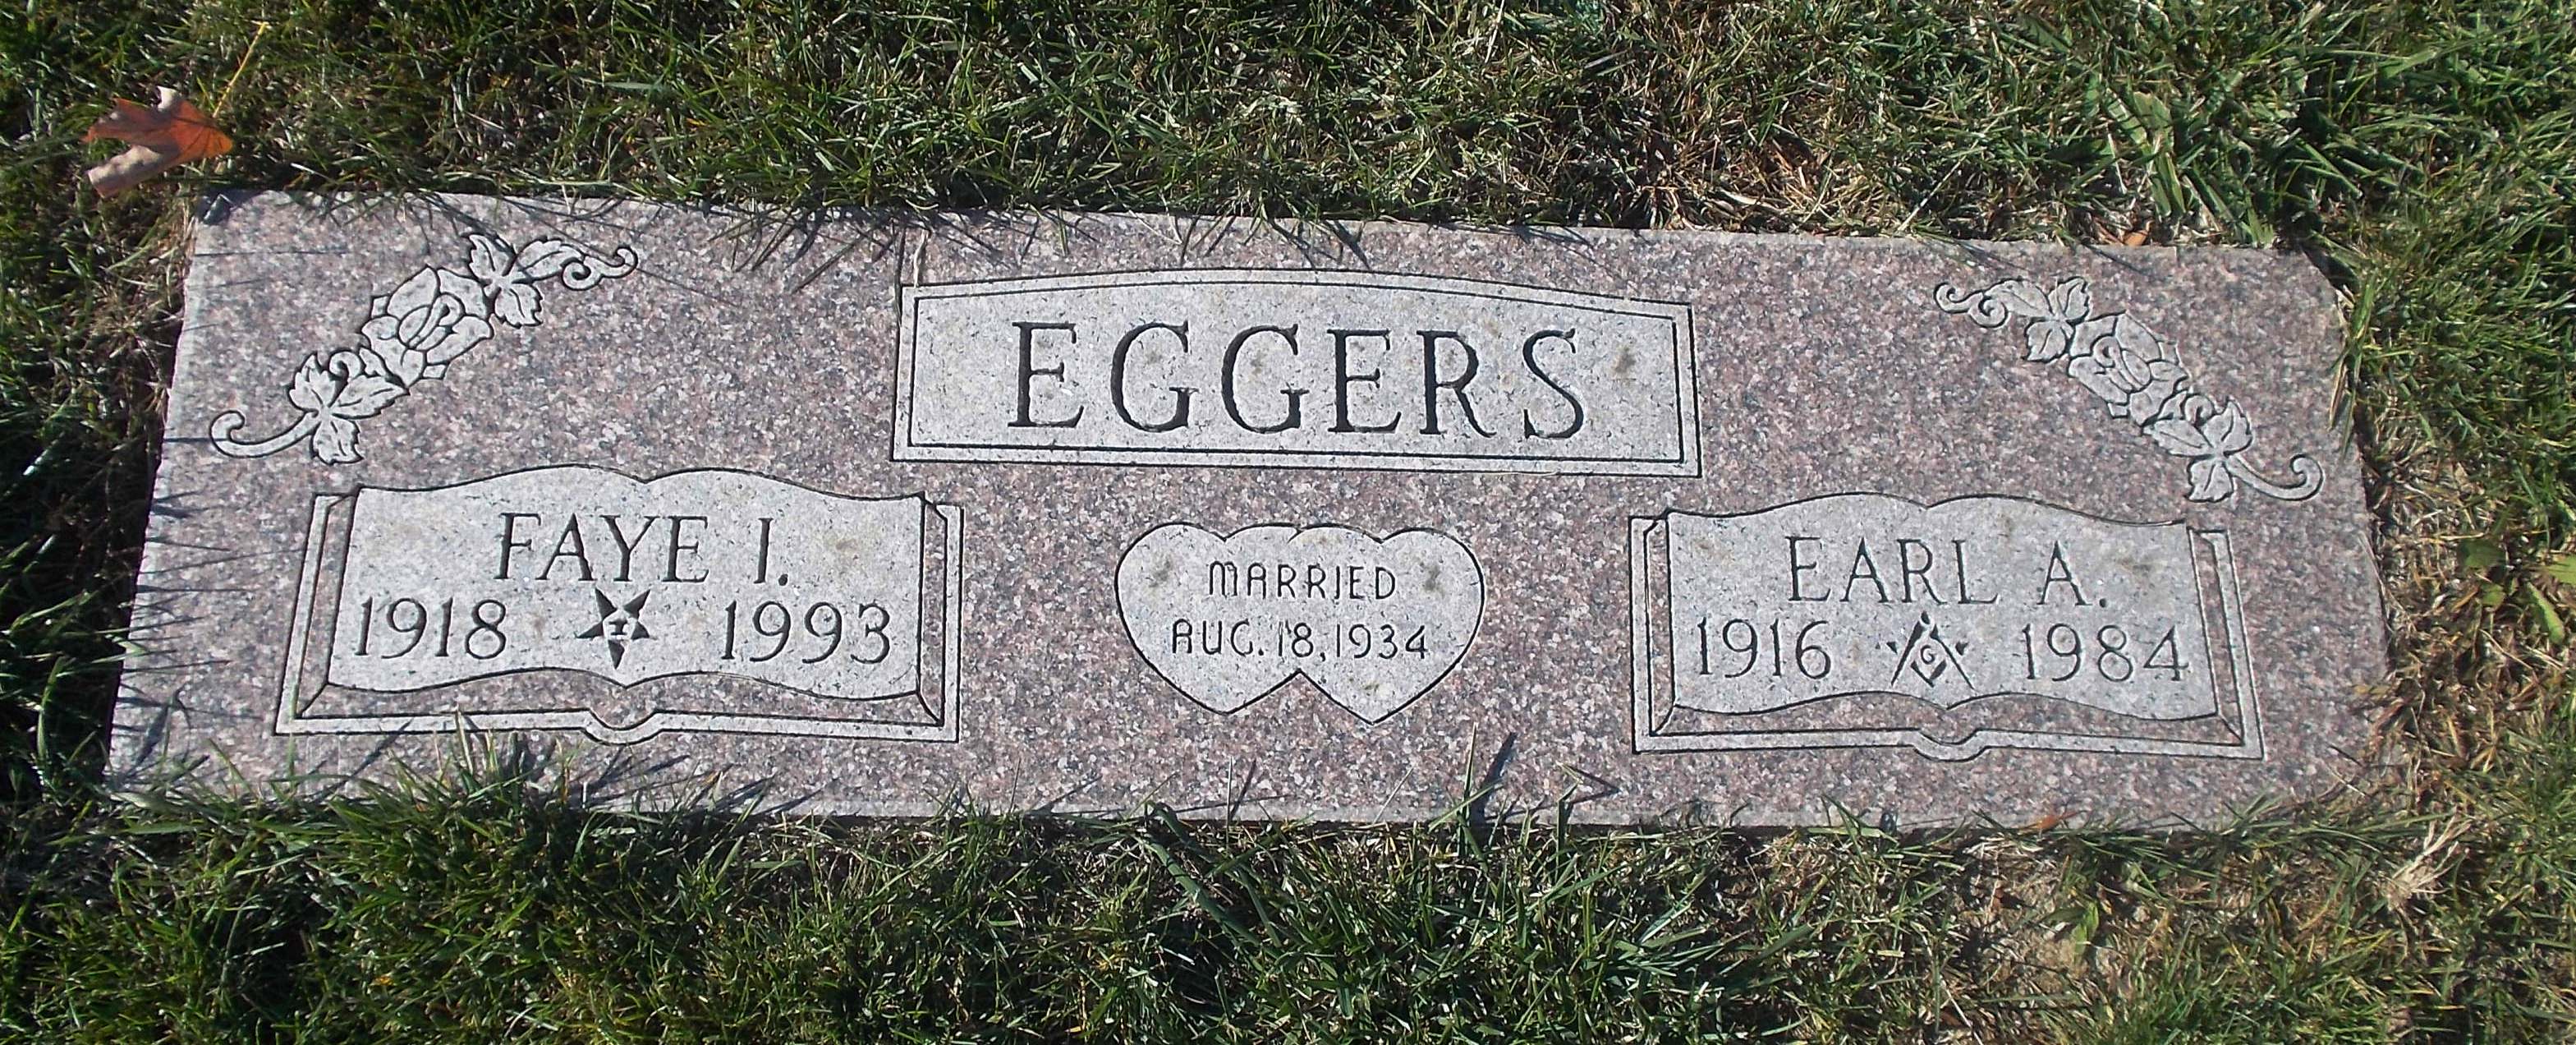 Earl A Eggers